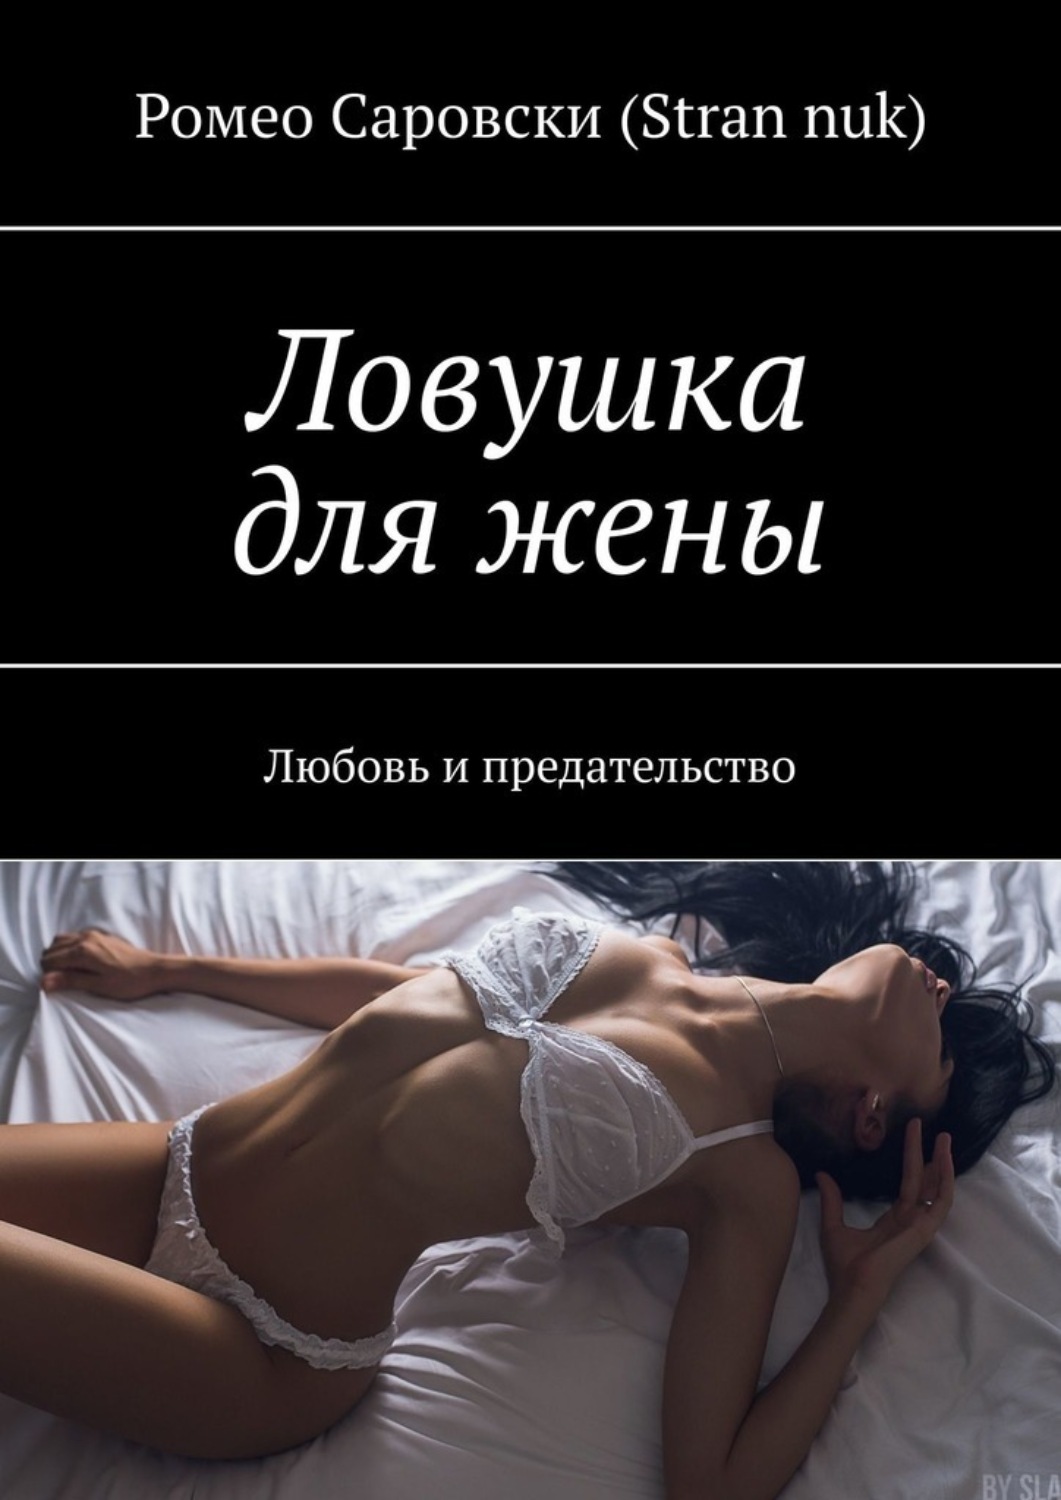 русский любовный роман про измену фото 66